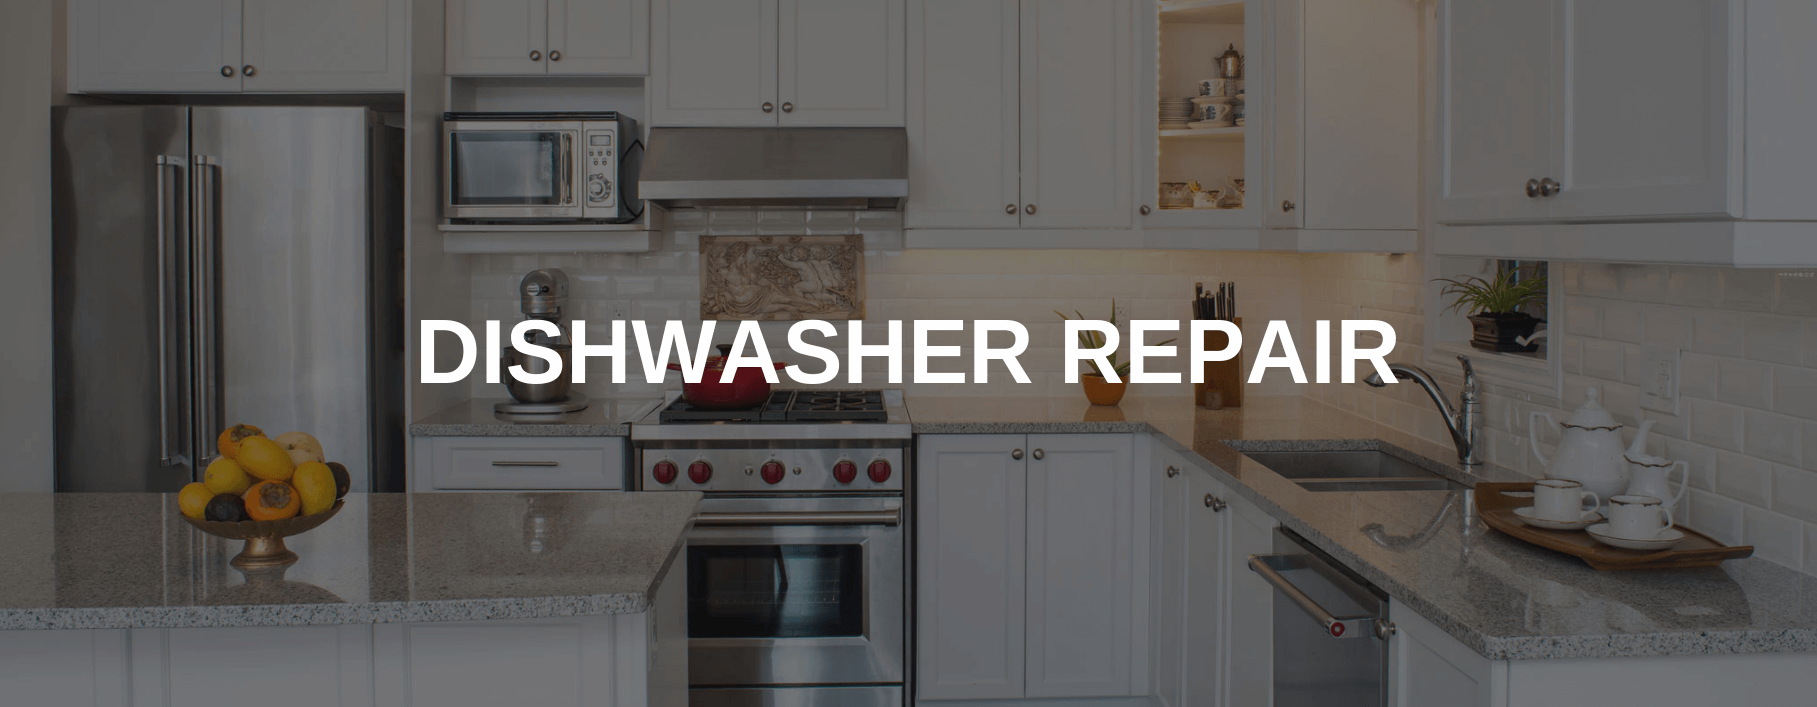 dishwasher repair irvine